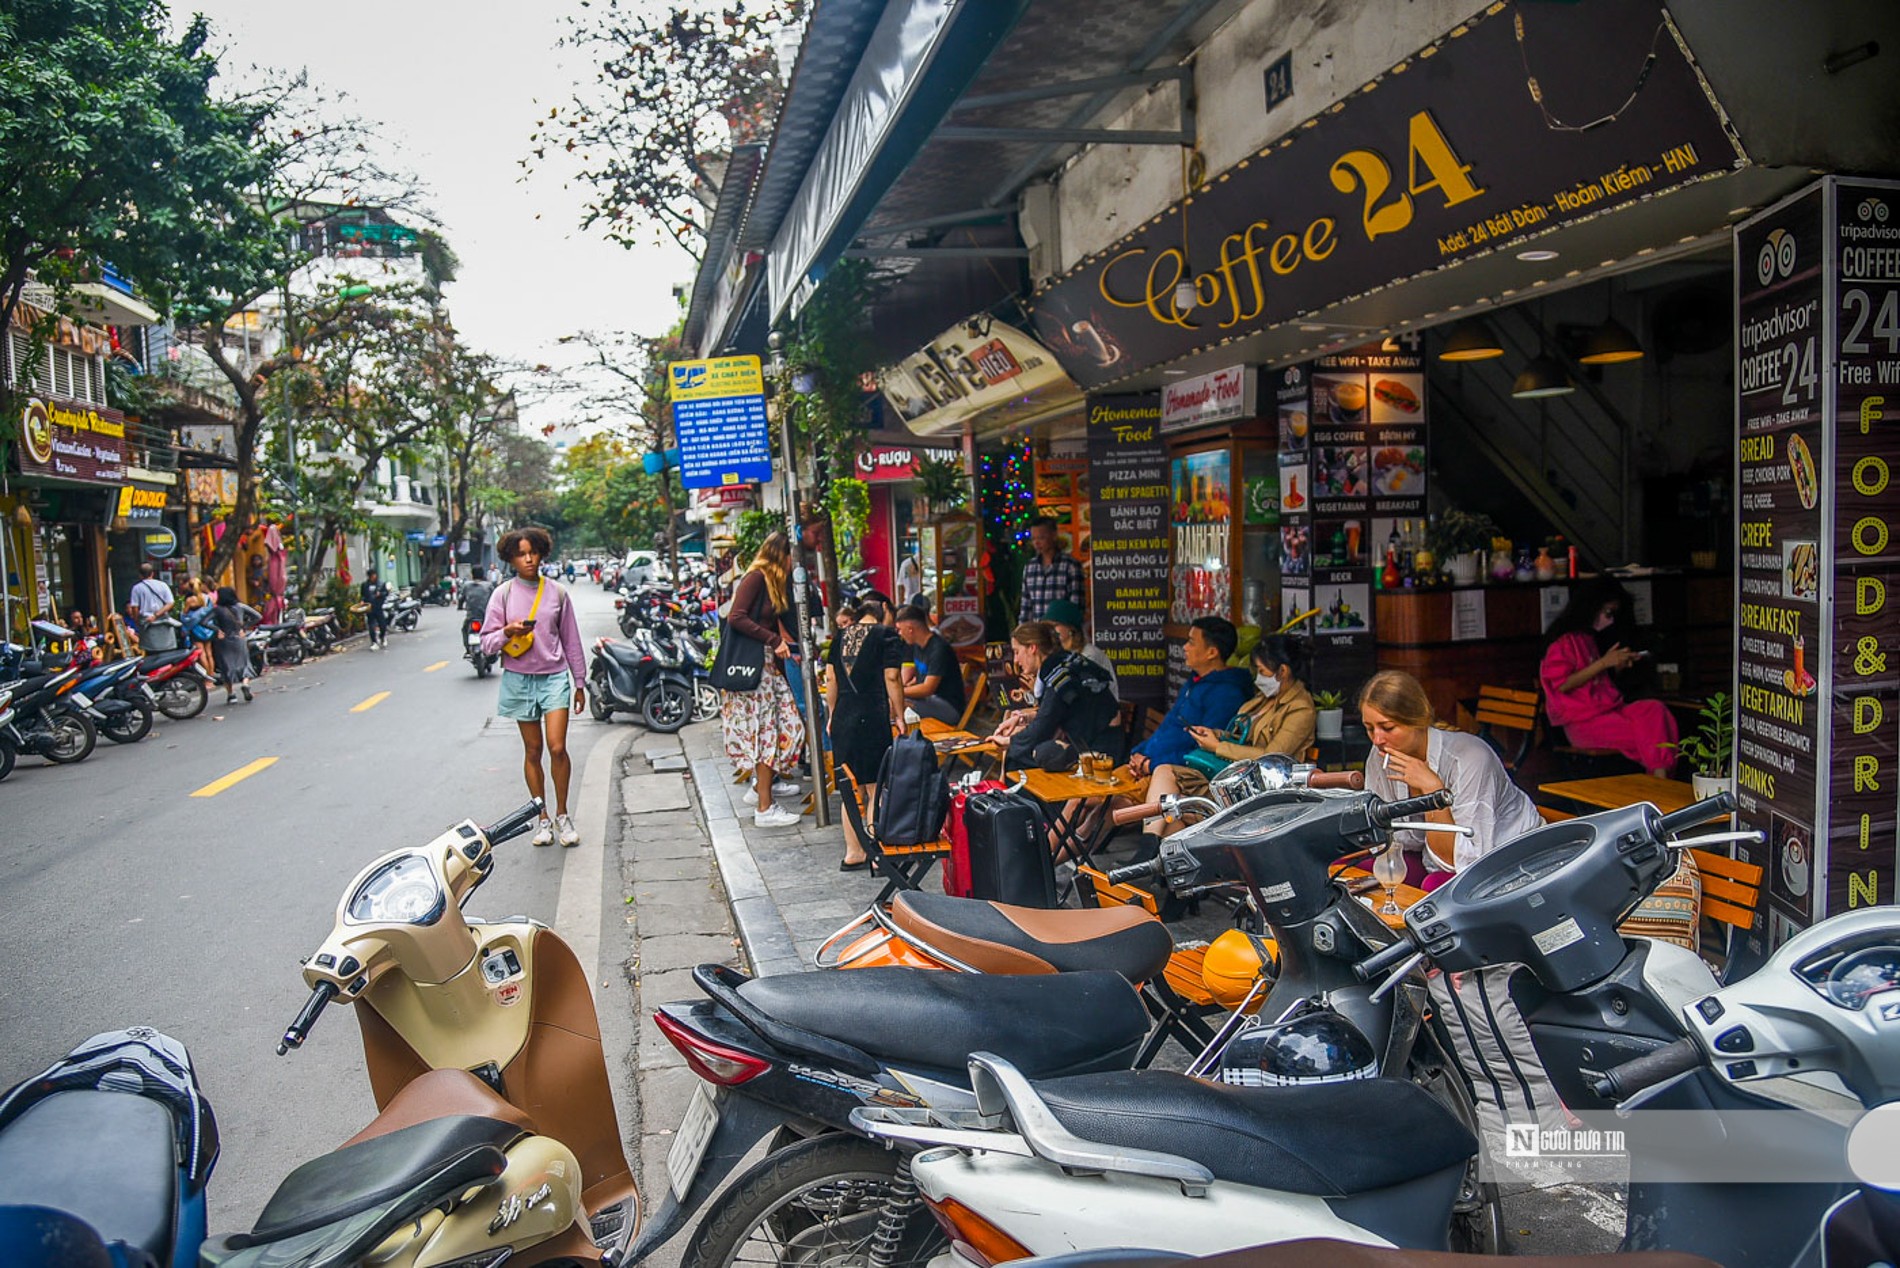 Muôn kiểu lấn chiếm vỉa hè ở Hà Nội